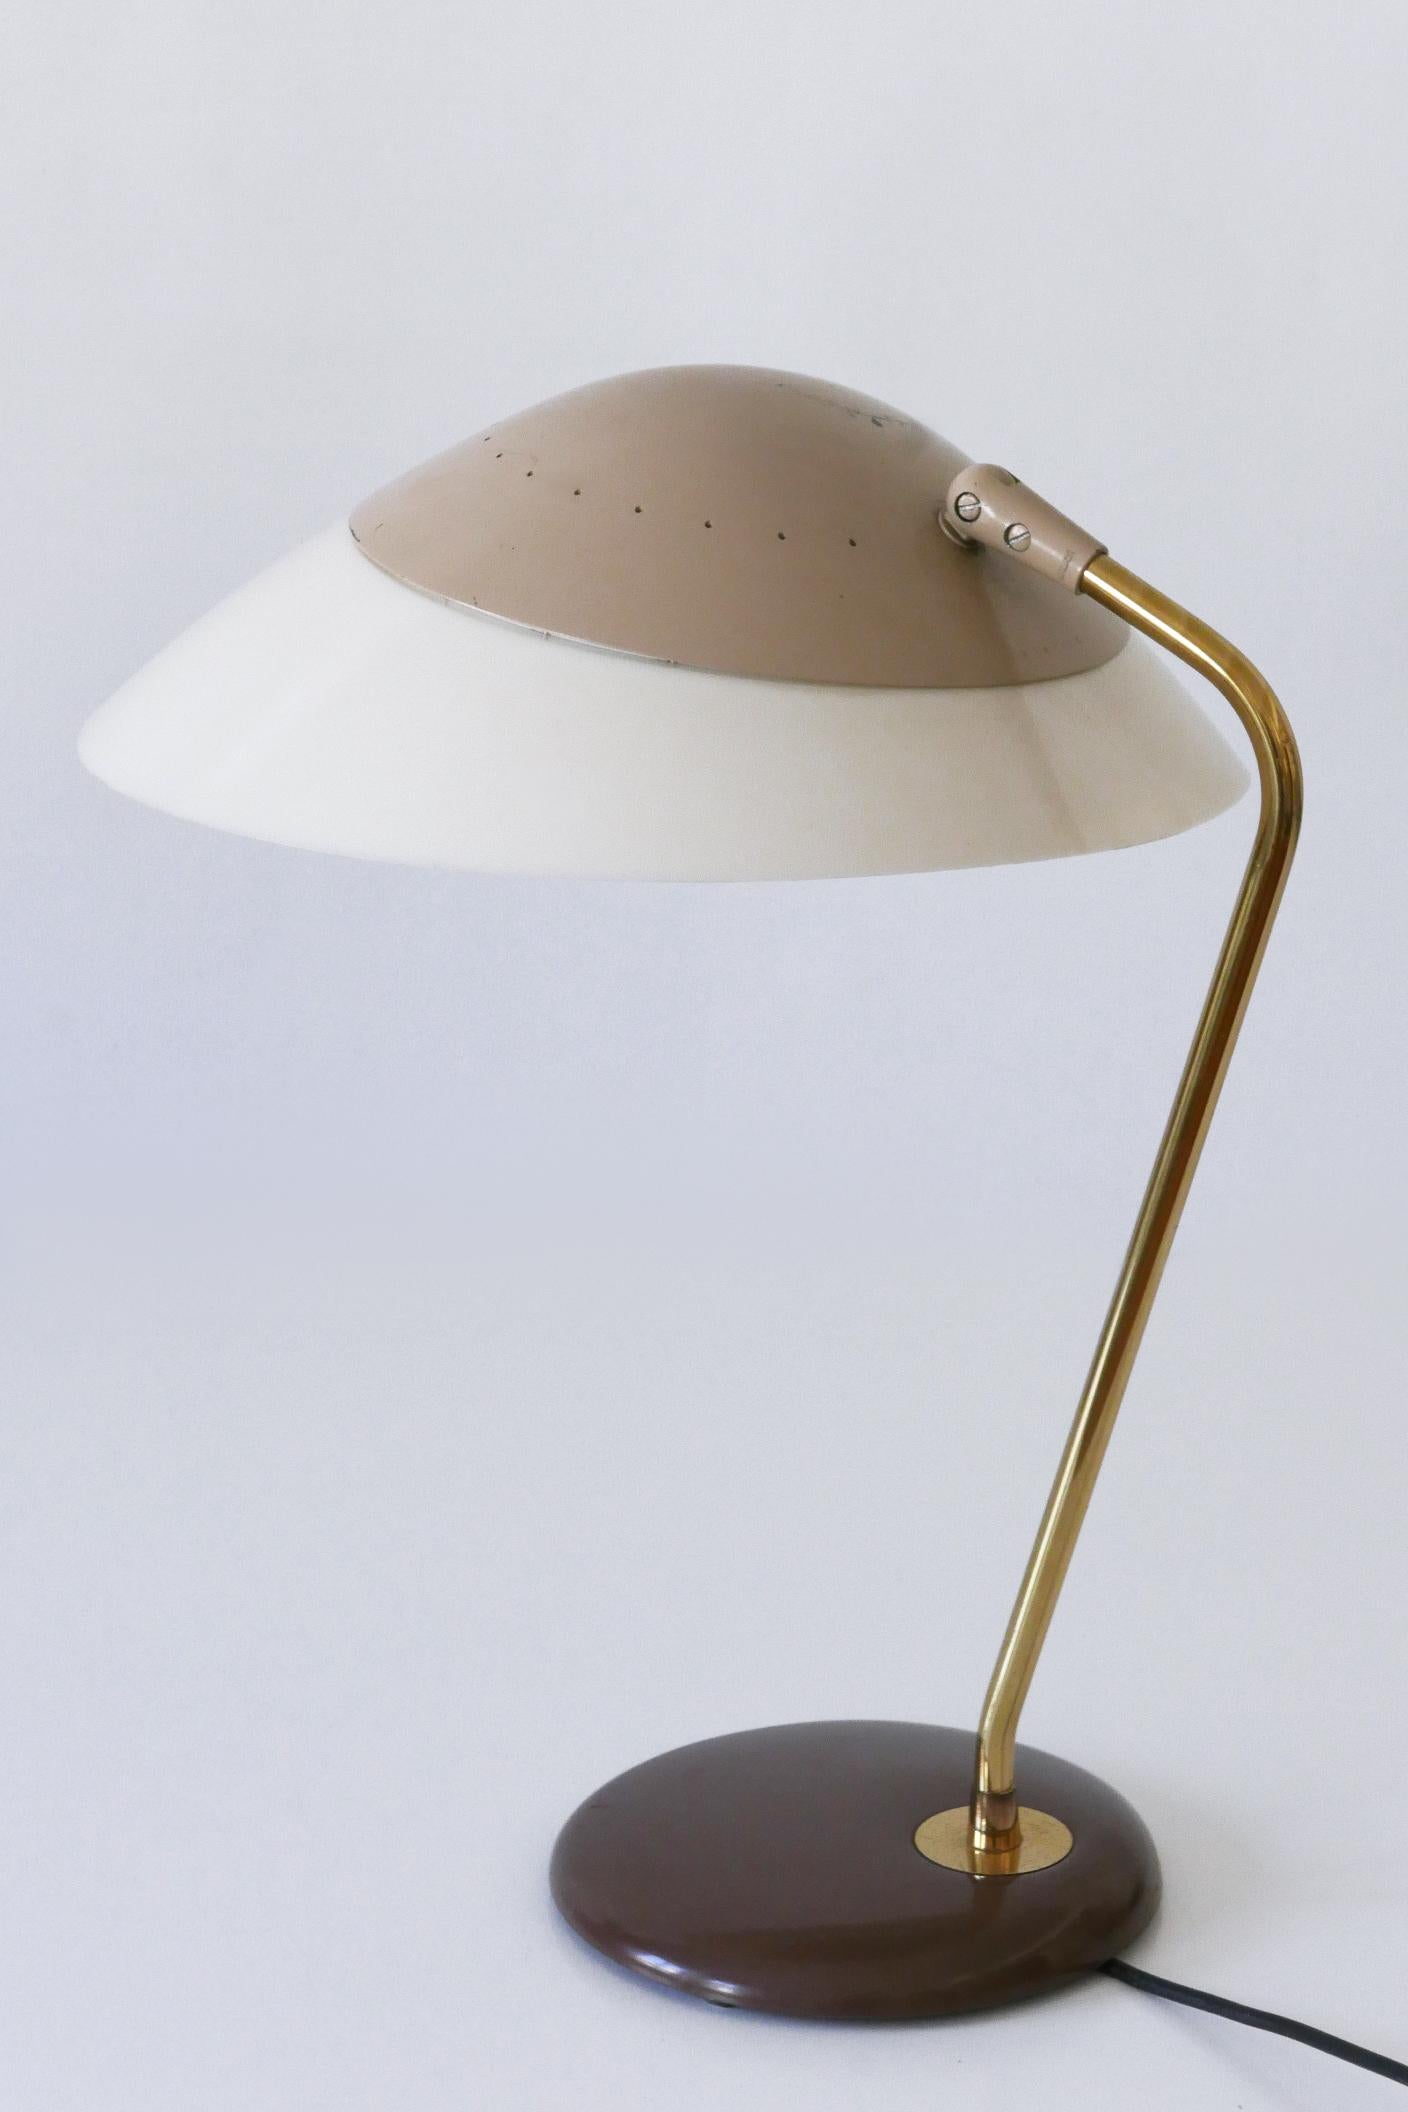 Lucite Elegant Table Lamp or Desk Light by Gerald Thurston for Lightolier USA 1950s For Sale